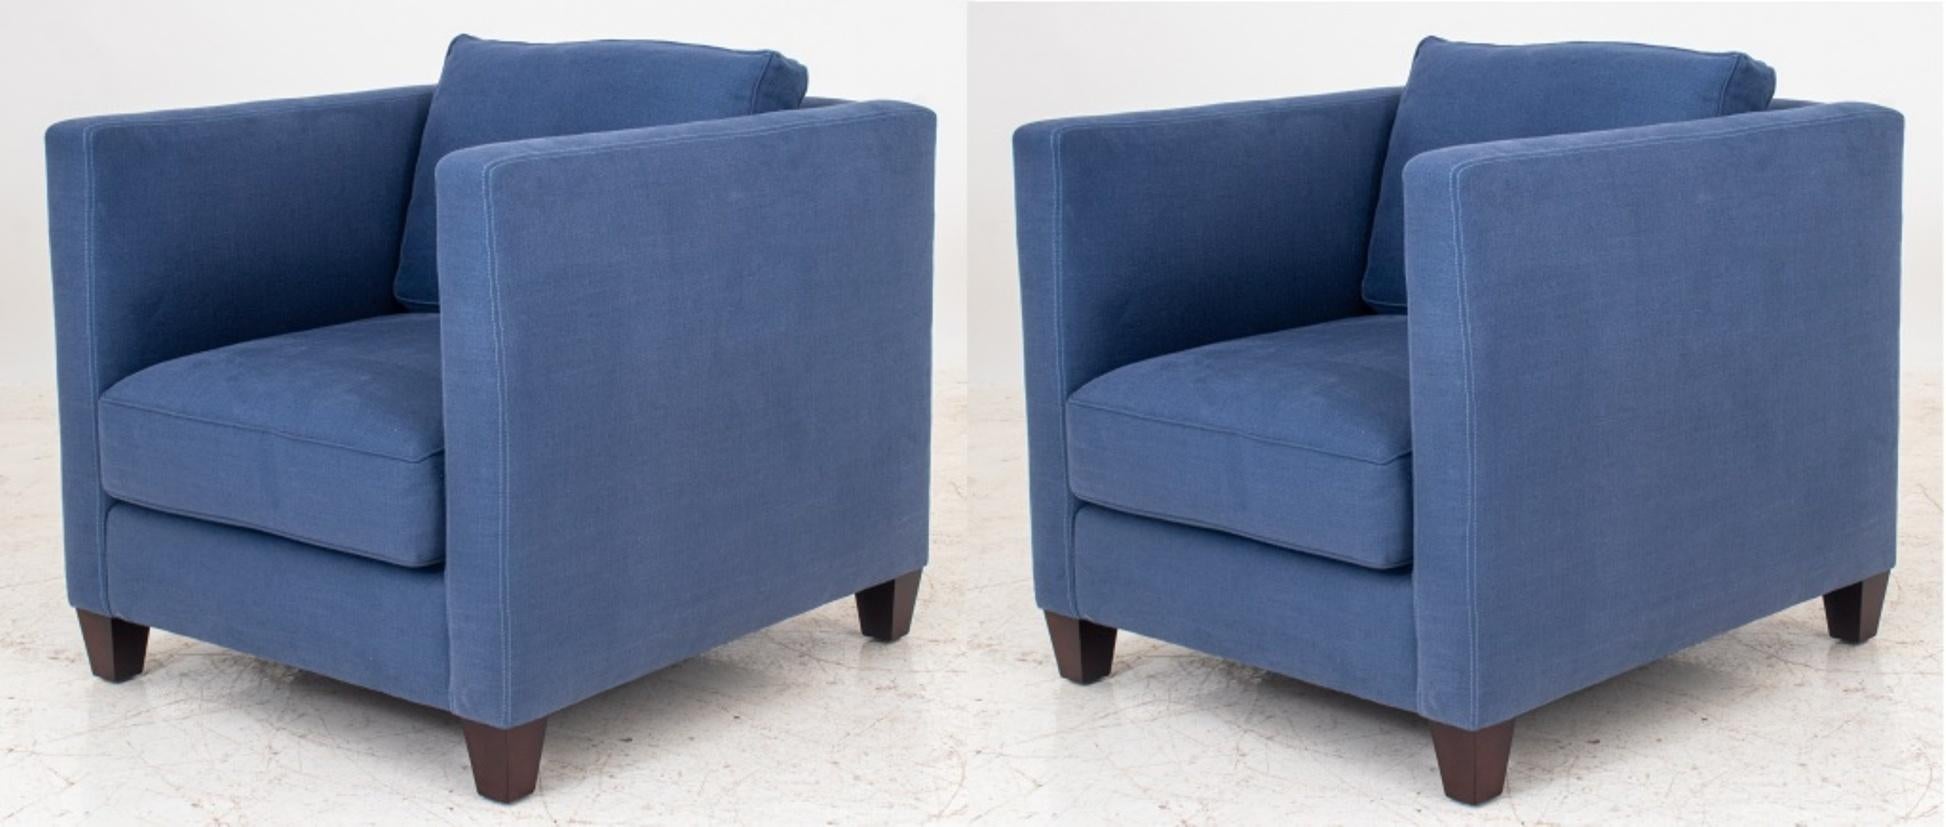 Paire de fauteuils modernes rembourrés de forme carrée, chacun avec un dossier carré et des coussins de dossier et d'assise tombants, rembourrés en lin bleu marine, sur des pieds en bloc effilés. Mesures : 30